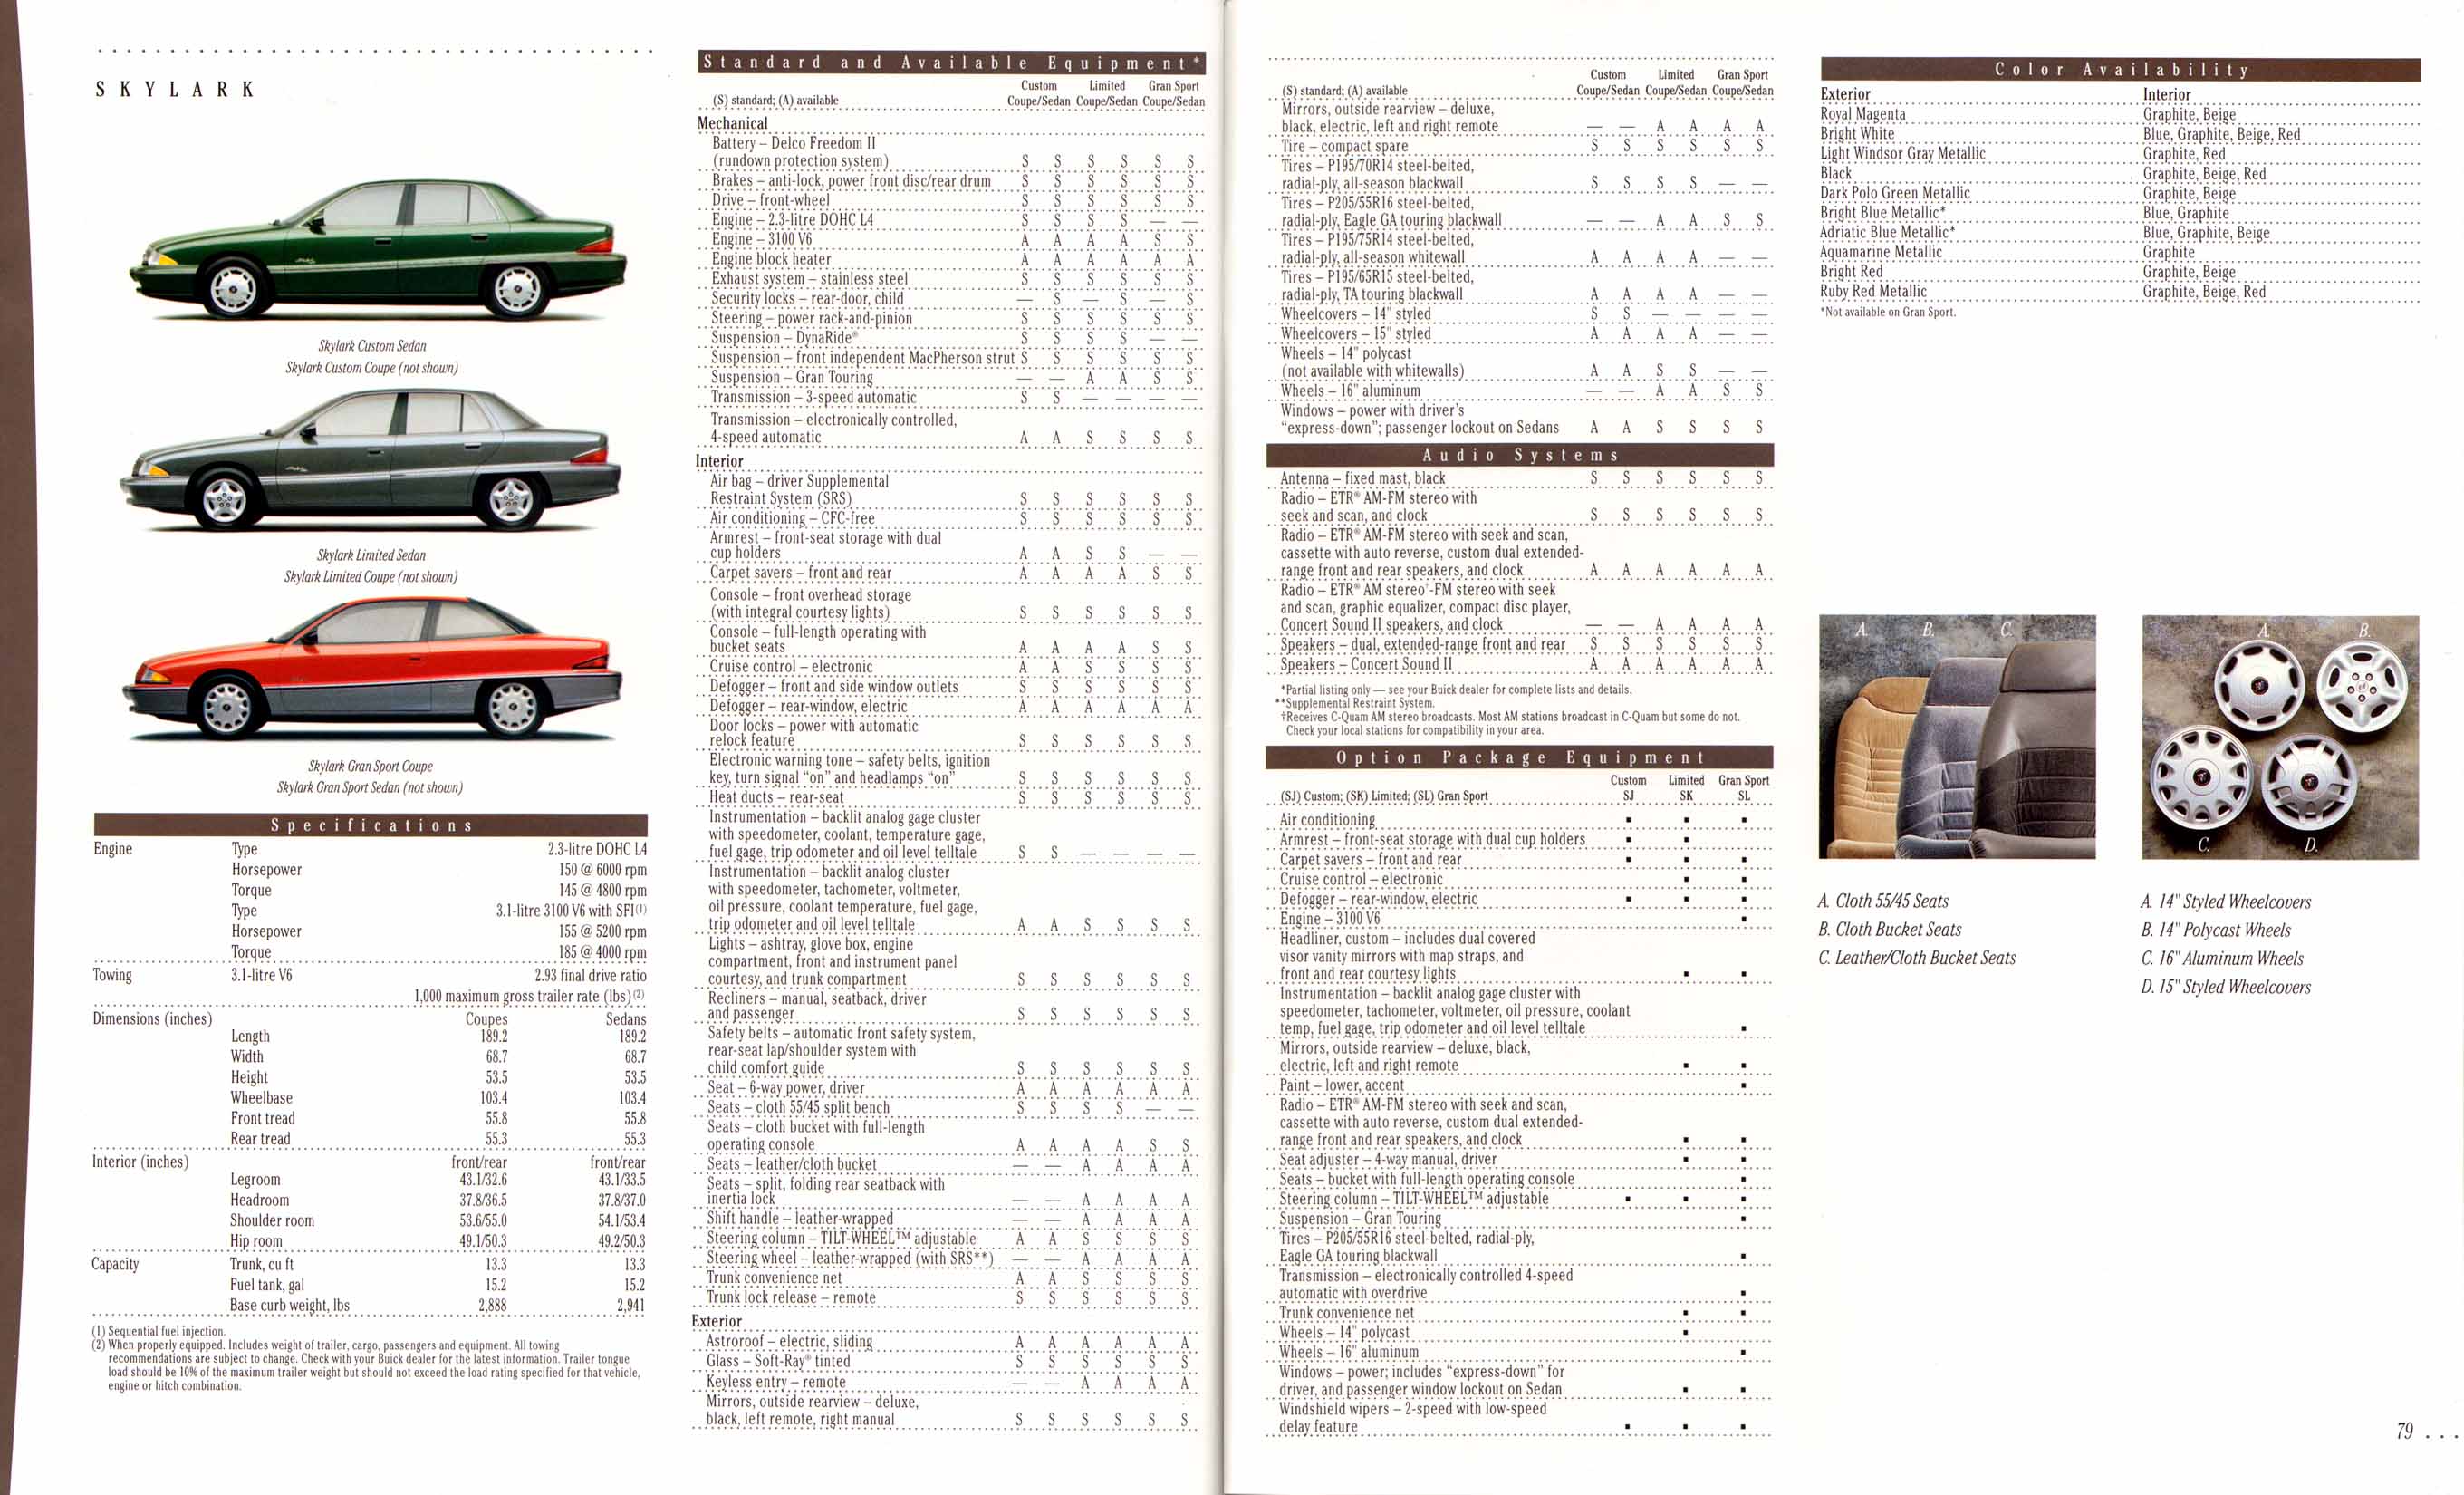 1995 Buick Full Line Prestige-78-79